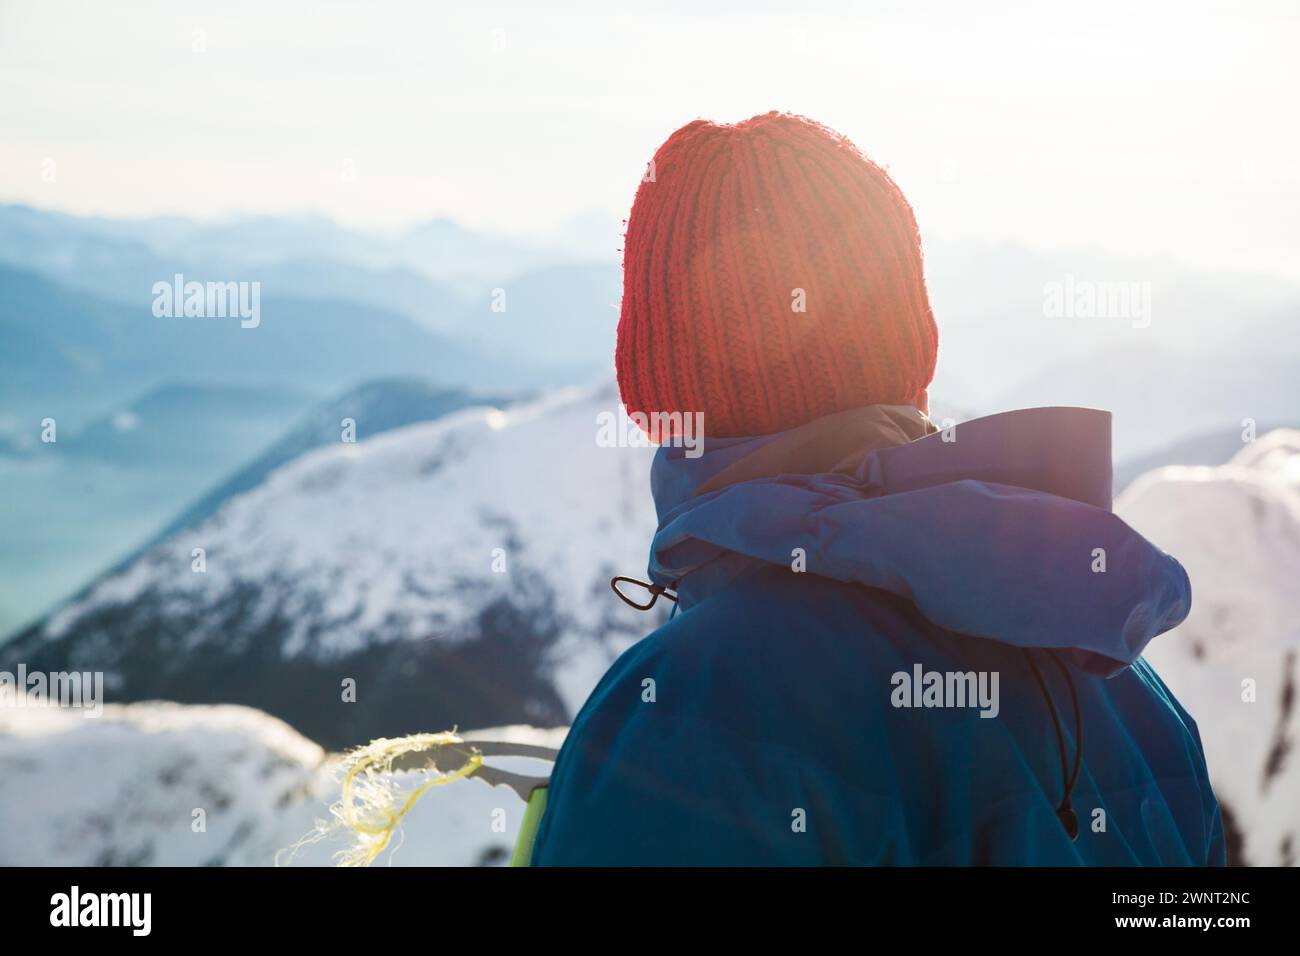 Vista trasera del hombre activo mirando hacia fuera a la vista desde la cumbre de la montaña Foto de stock